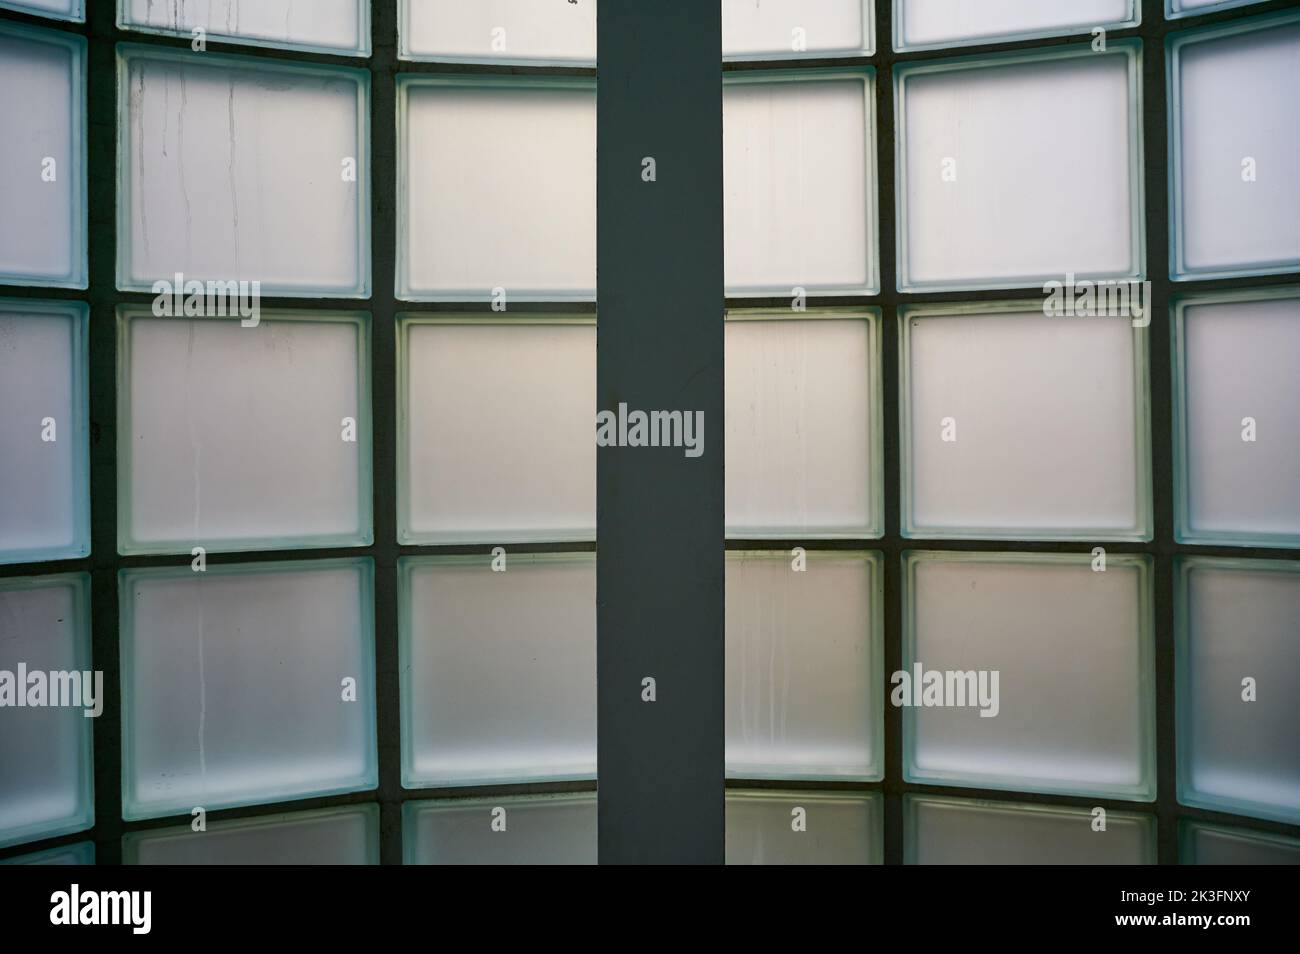 Das Innere des Gebäudes sieht aus, wie ein undurchsichtiges gebogenes Fenster tagsüber aus Glasblöcken gebaut wurde Stockfoto